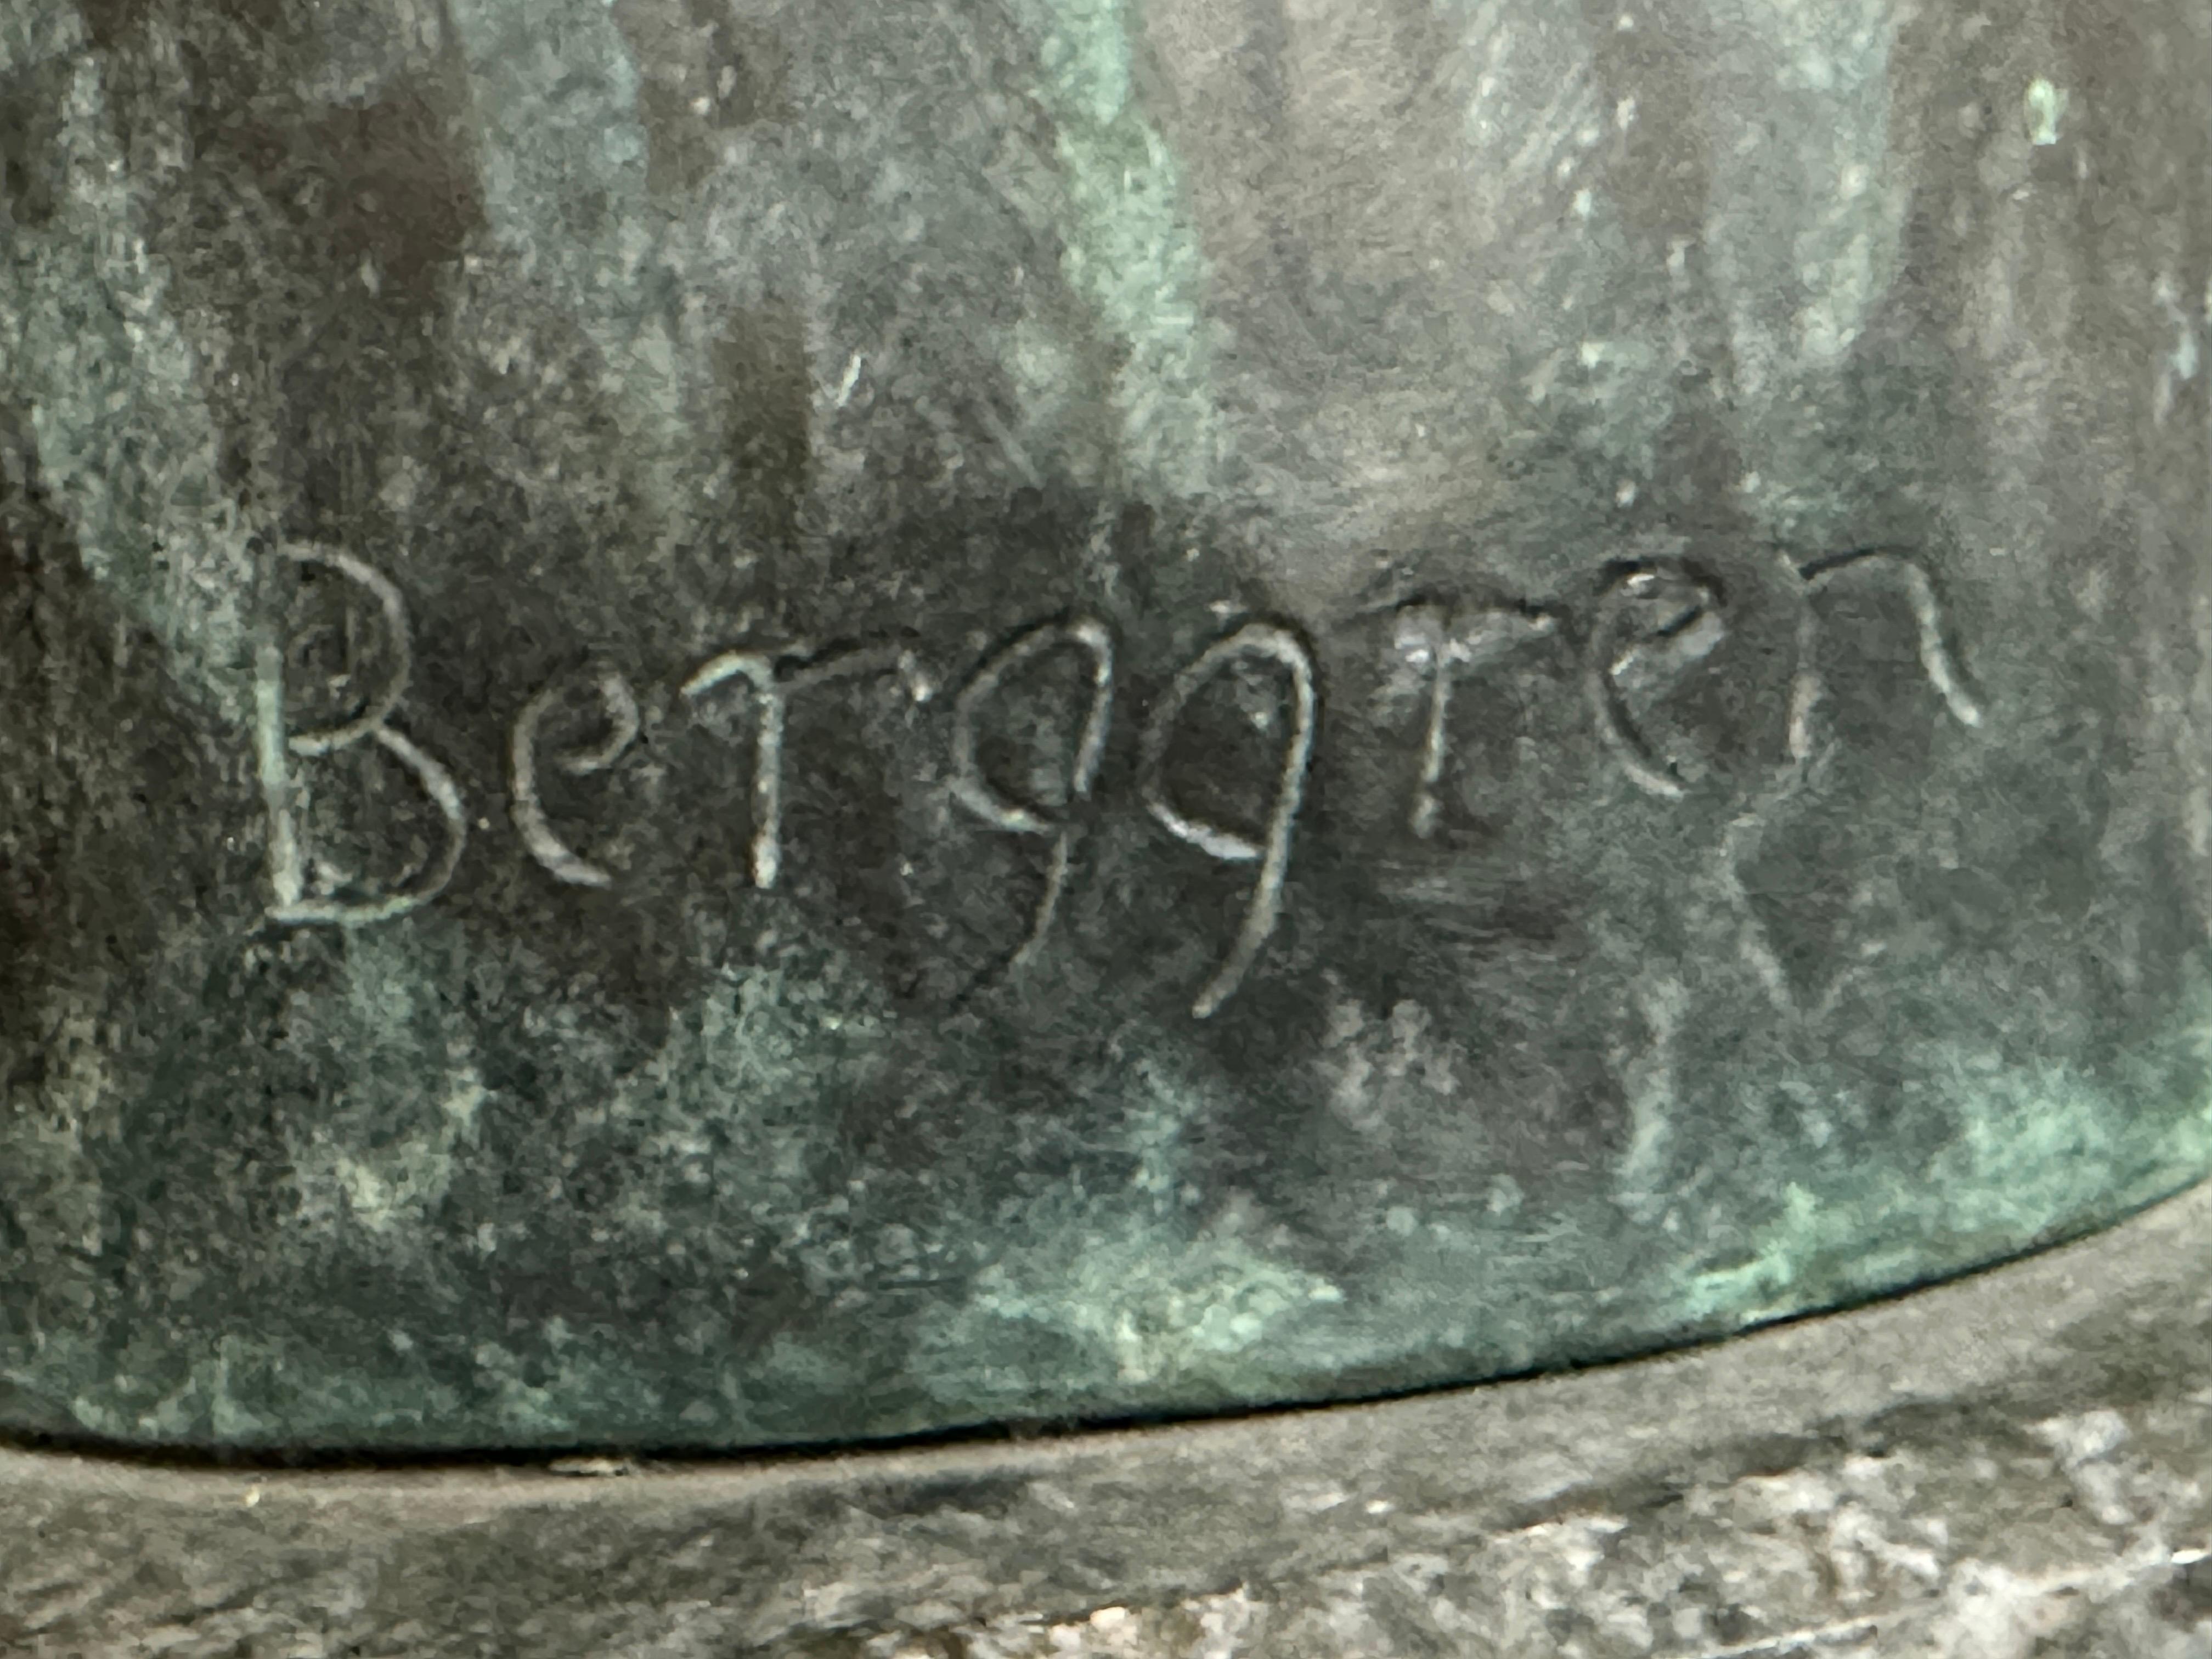 Sigge Berggren (Schweden, 1911-1968)
Bronzeskulptur, gegossen von Bergman in Malmö, Schweden, auf einem Marmorsockel.
Signiert vom Künstler mit Gießereistempel im unteren Teil.
Figur eines Mannes mit langem Hals
Sehr schöne grüne Patina, guter